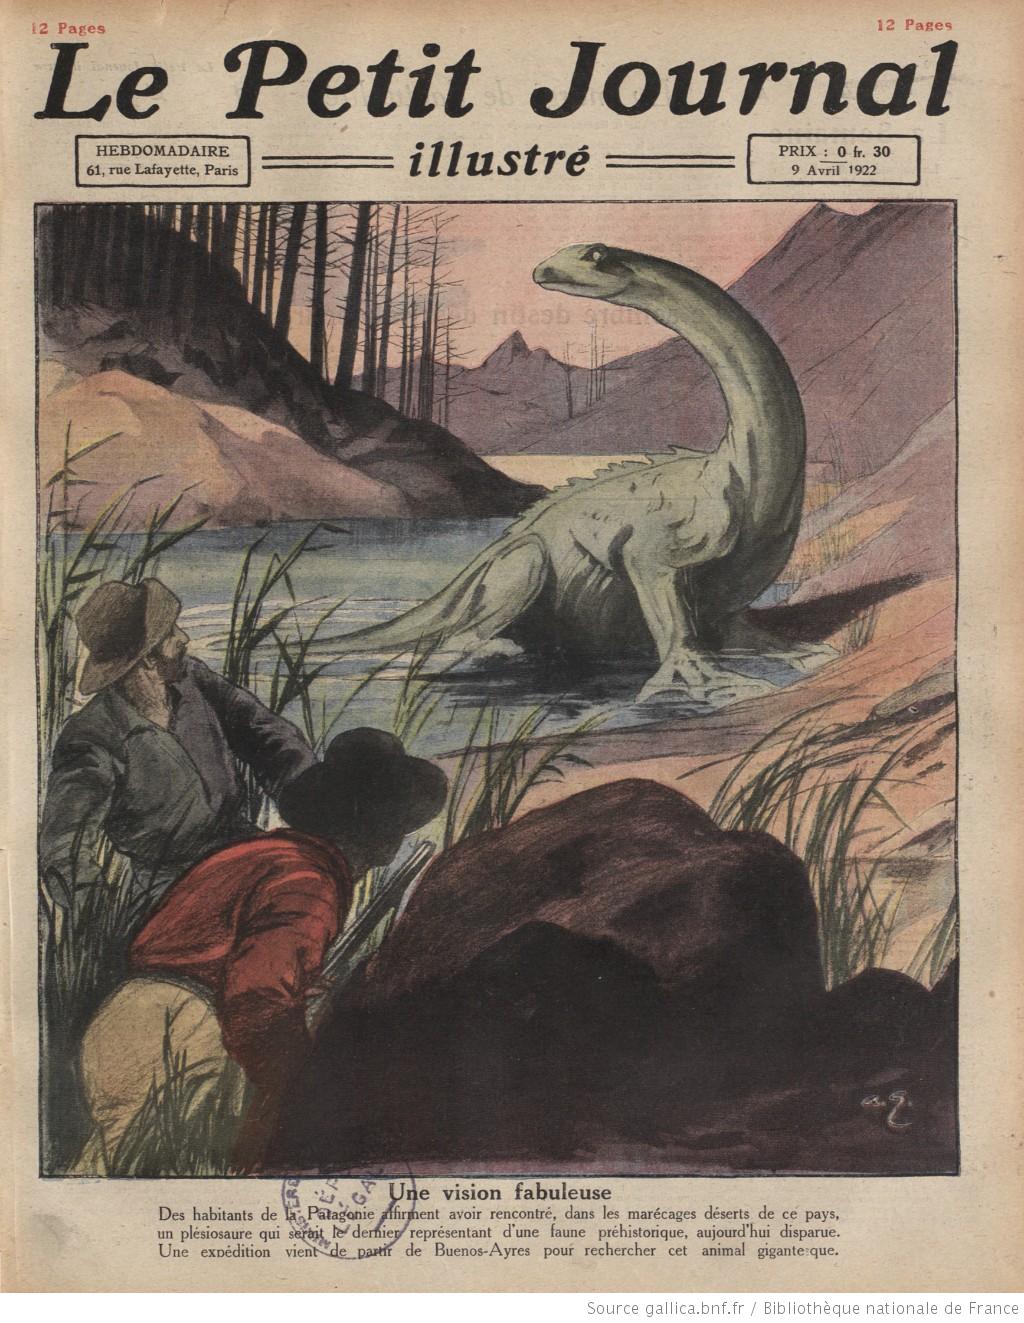 Couverture du Petit Journal Illustré le 1922-04-09, relatant la découverte d'un 'plésiosaure' dans des marécages de Patagonie